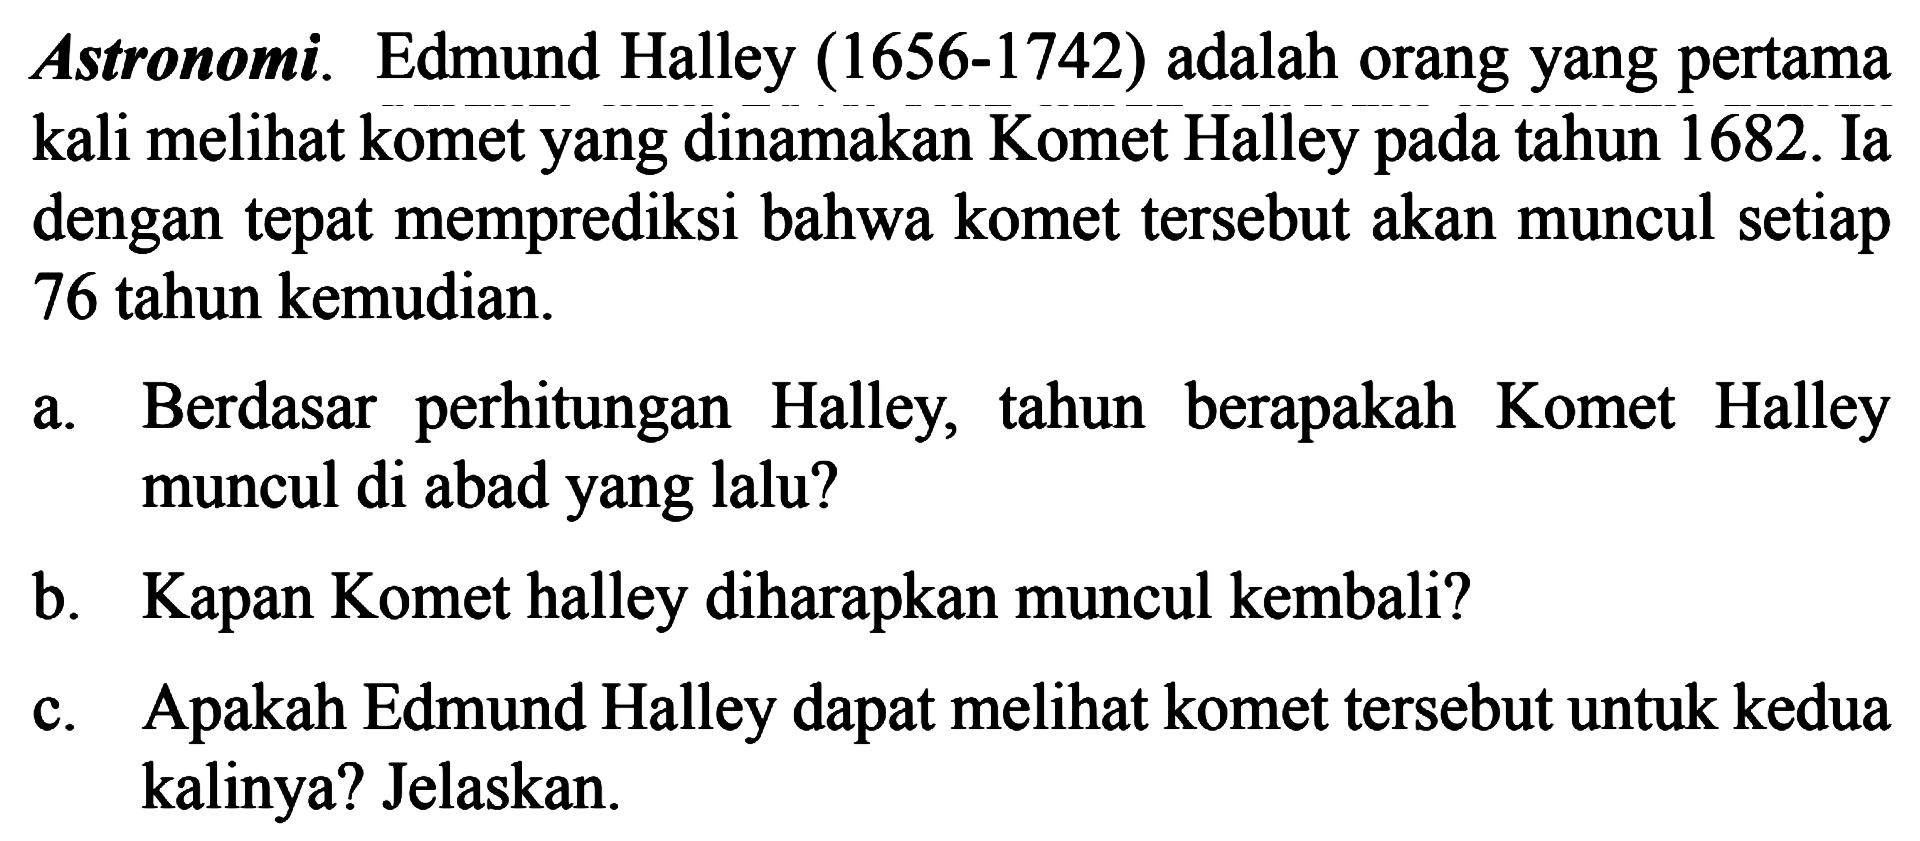 Astronomi. Edmund Halley (1656-1742) adalah orang yang pertama kali melihat komet yang dinamakan Komet Halley tahun 1682. Ia dengan tepat memprediksi bahwa komet tersebut akan muncul setiap 76 tahun kemudian. a. Berdasar   perhitungan Halley, tahun   berapakah Komet Halley muncul di abad yang lalu? b. Kapan Komet halley diharapkan muncul kembali? c.. Apakah Edmund Halley dapat melihat komet tersebut untuk kedua kalinya? Jelaskan.